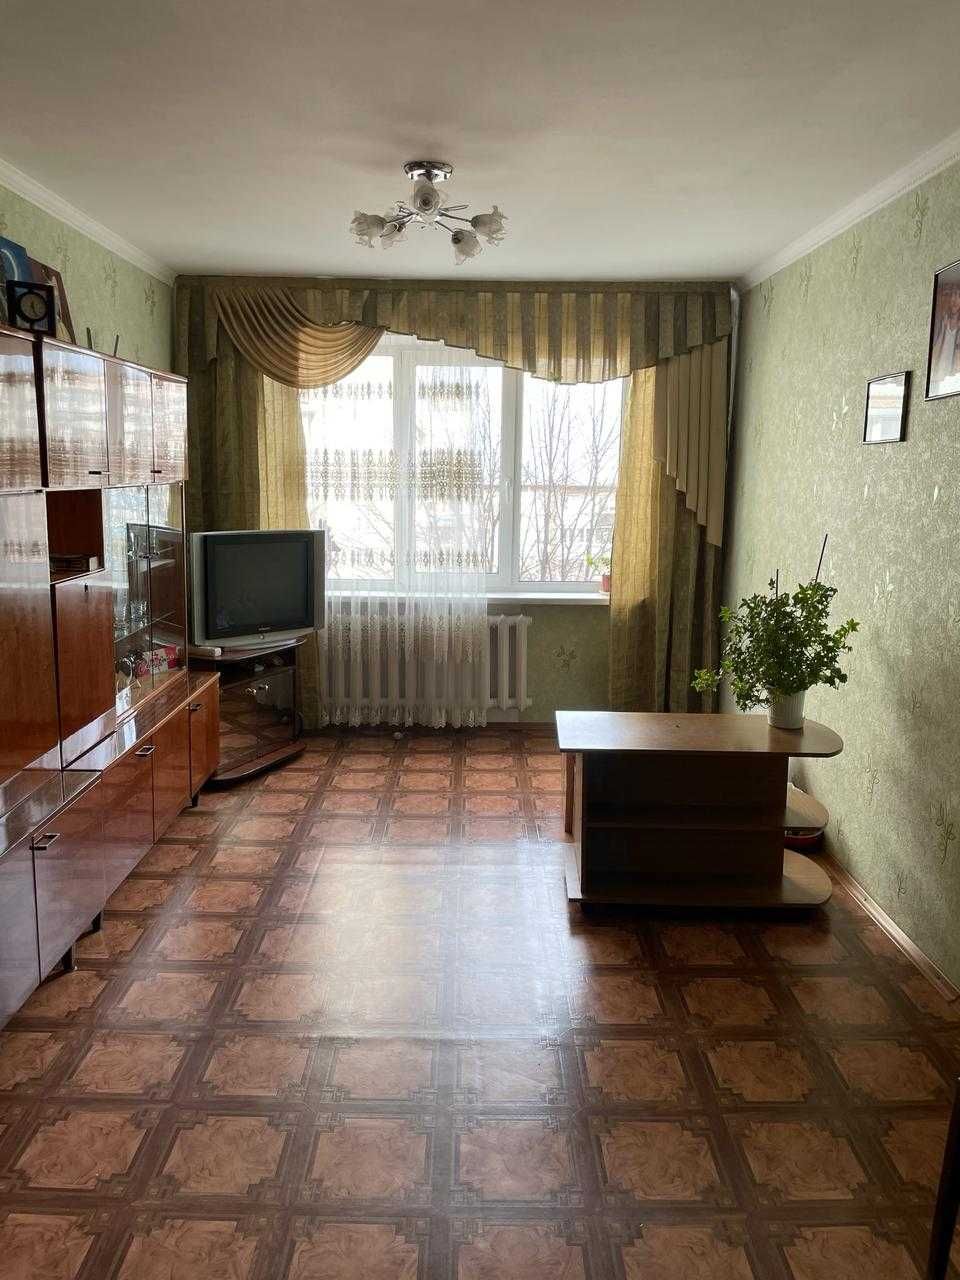 Продам 3- х кімнатну квартиру по вулиці Нарбутівська від власника